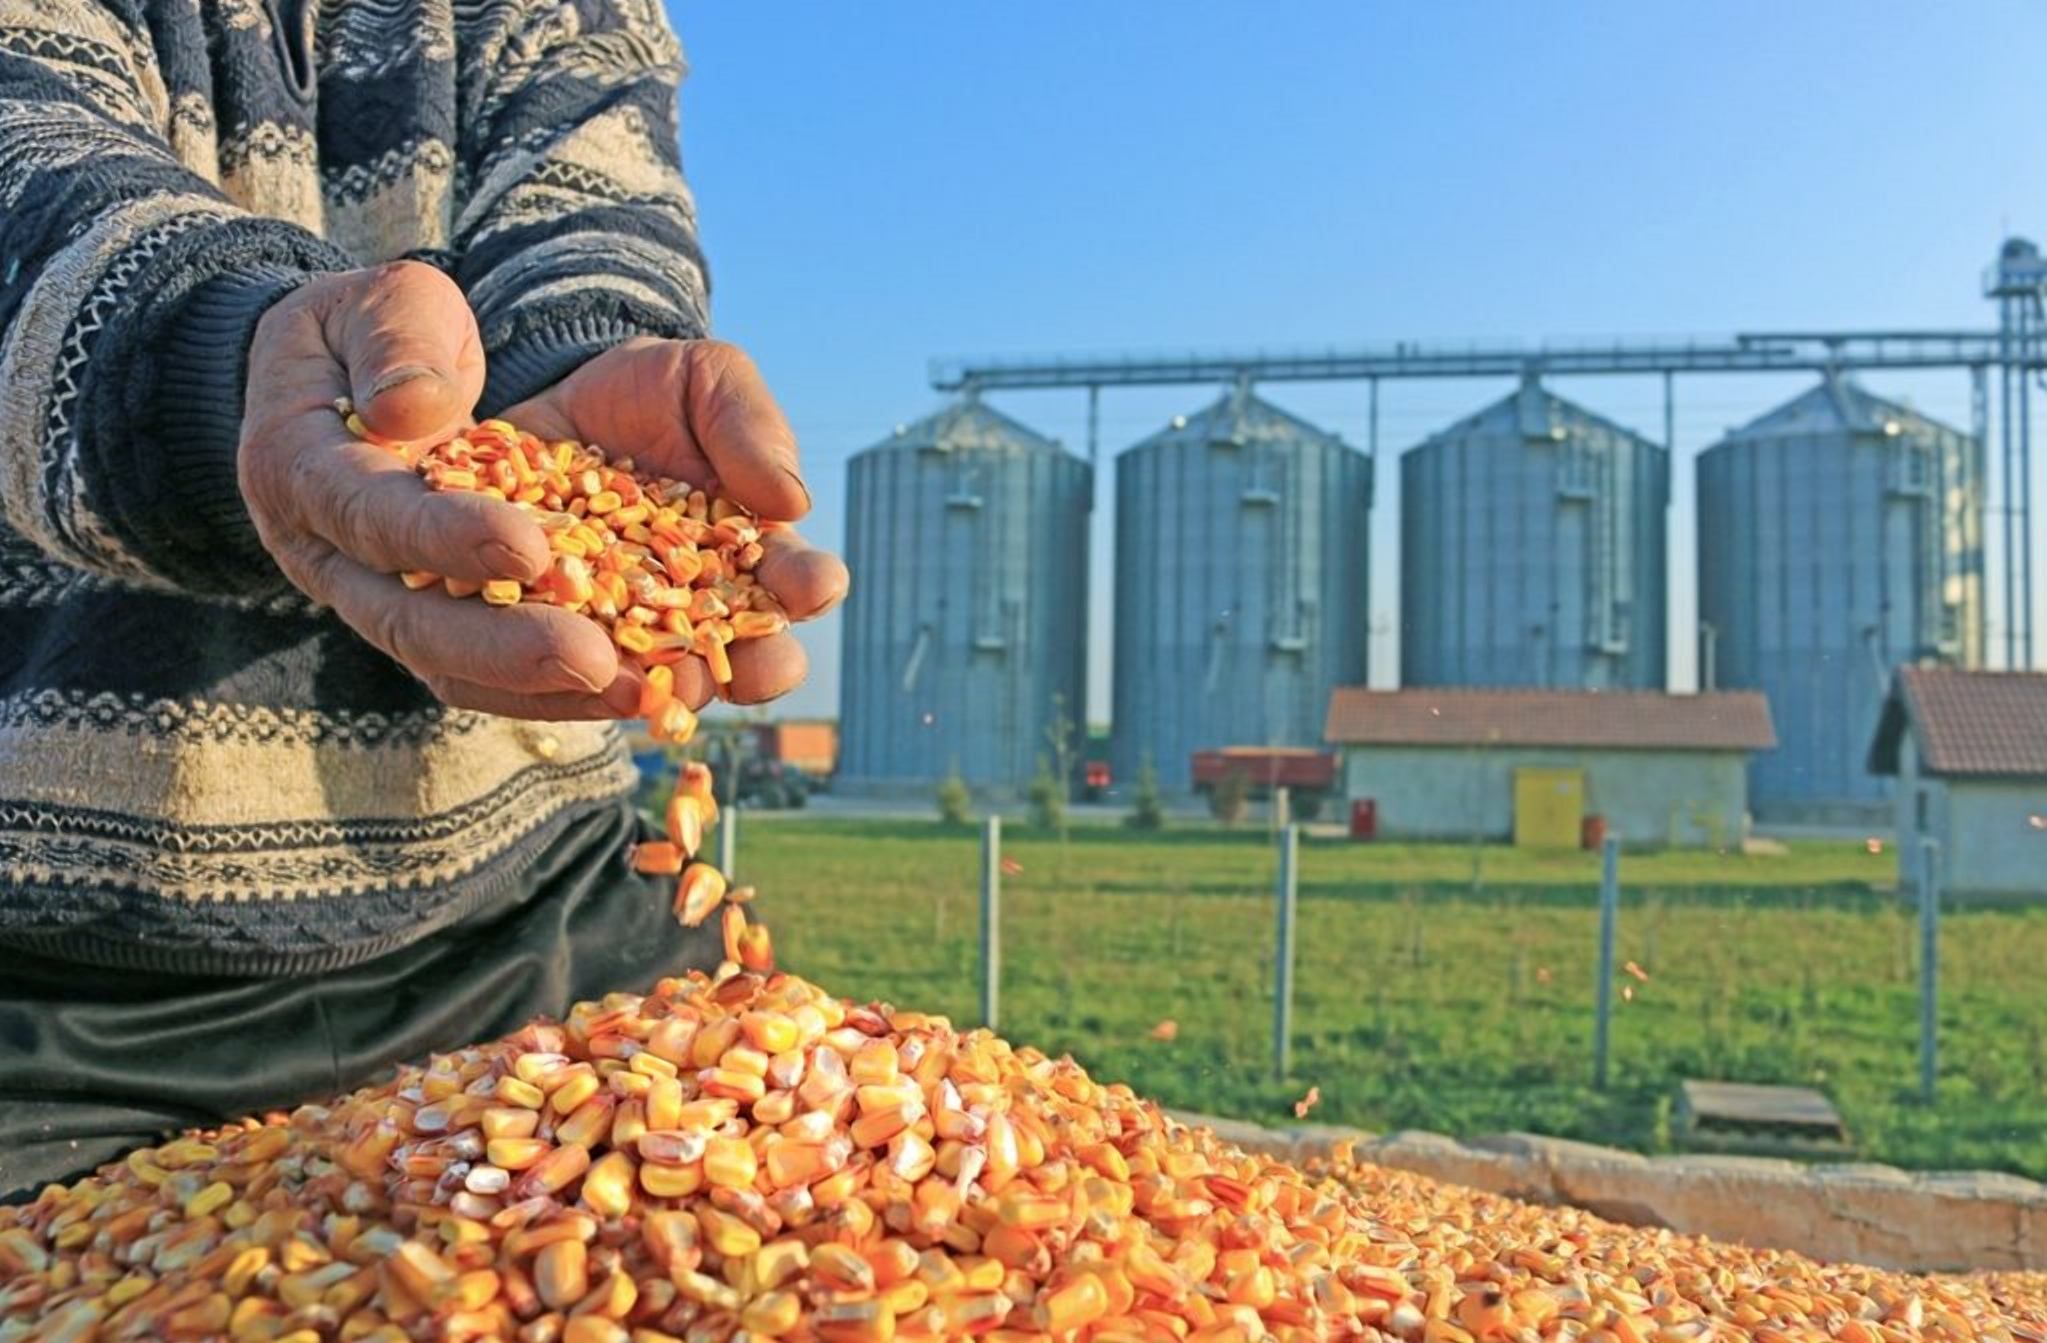 Китайская компания хочет построить завод по переработке кукурузы в Украине: сумма инвестиций